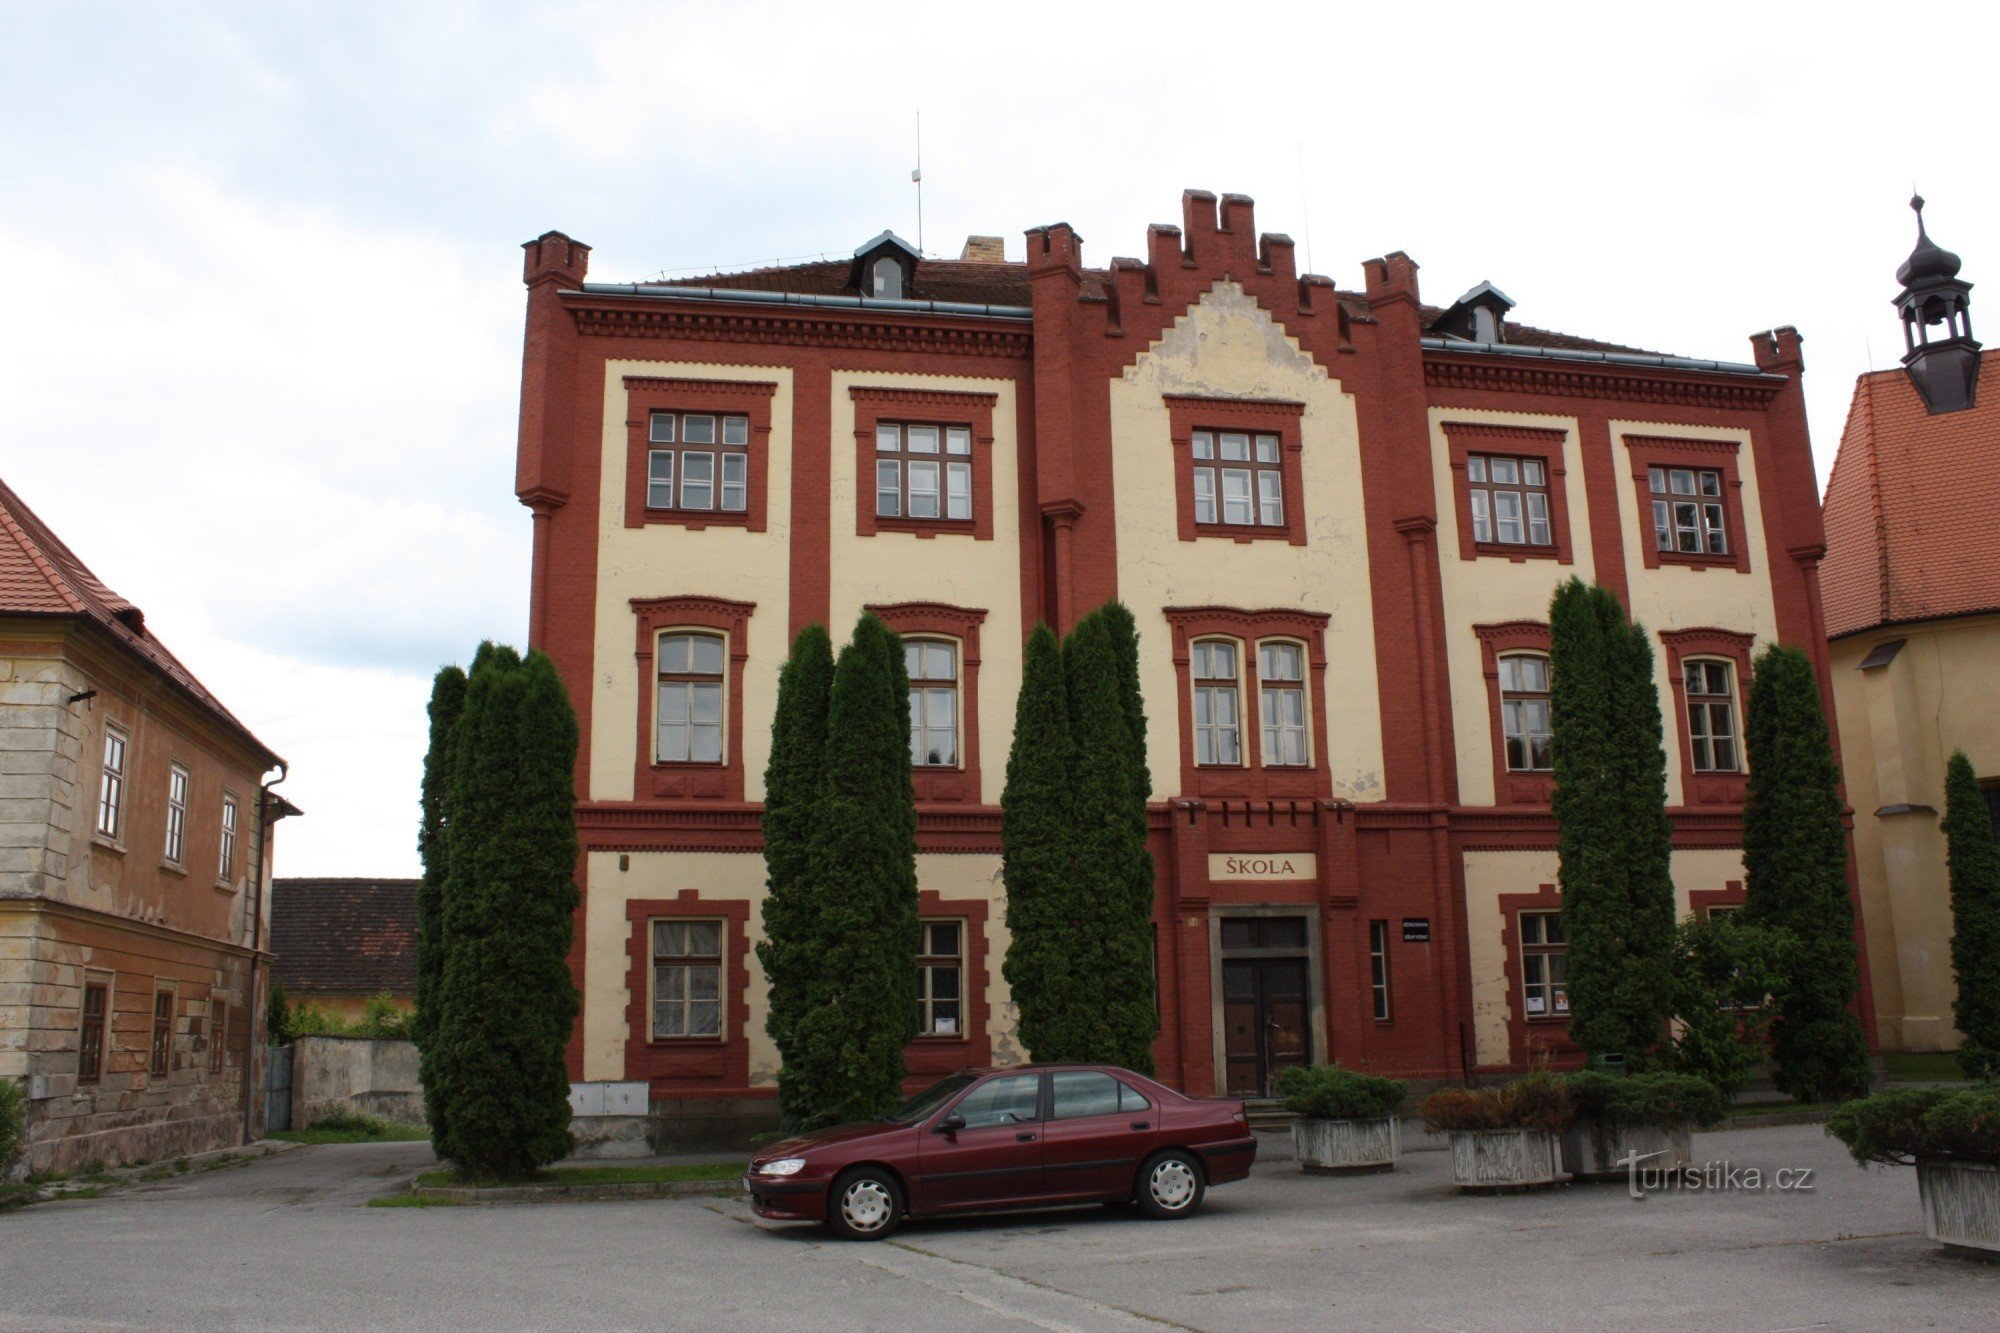 Edifício neogótico da antiga escola em Netolice no bairro da igreja de St. Venceslau